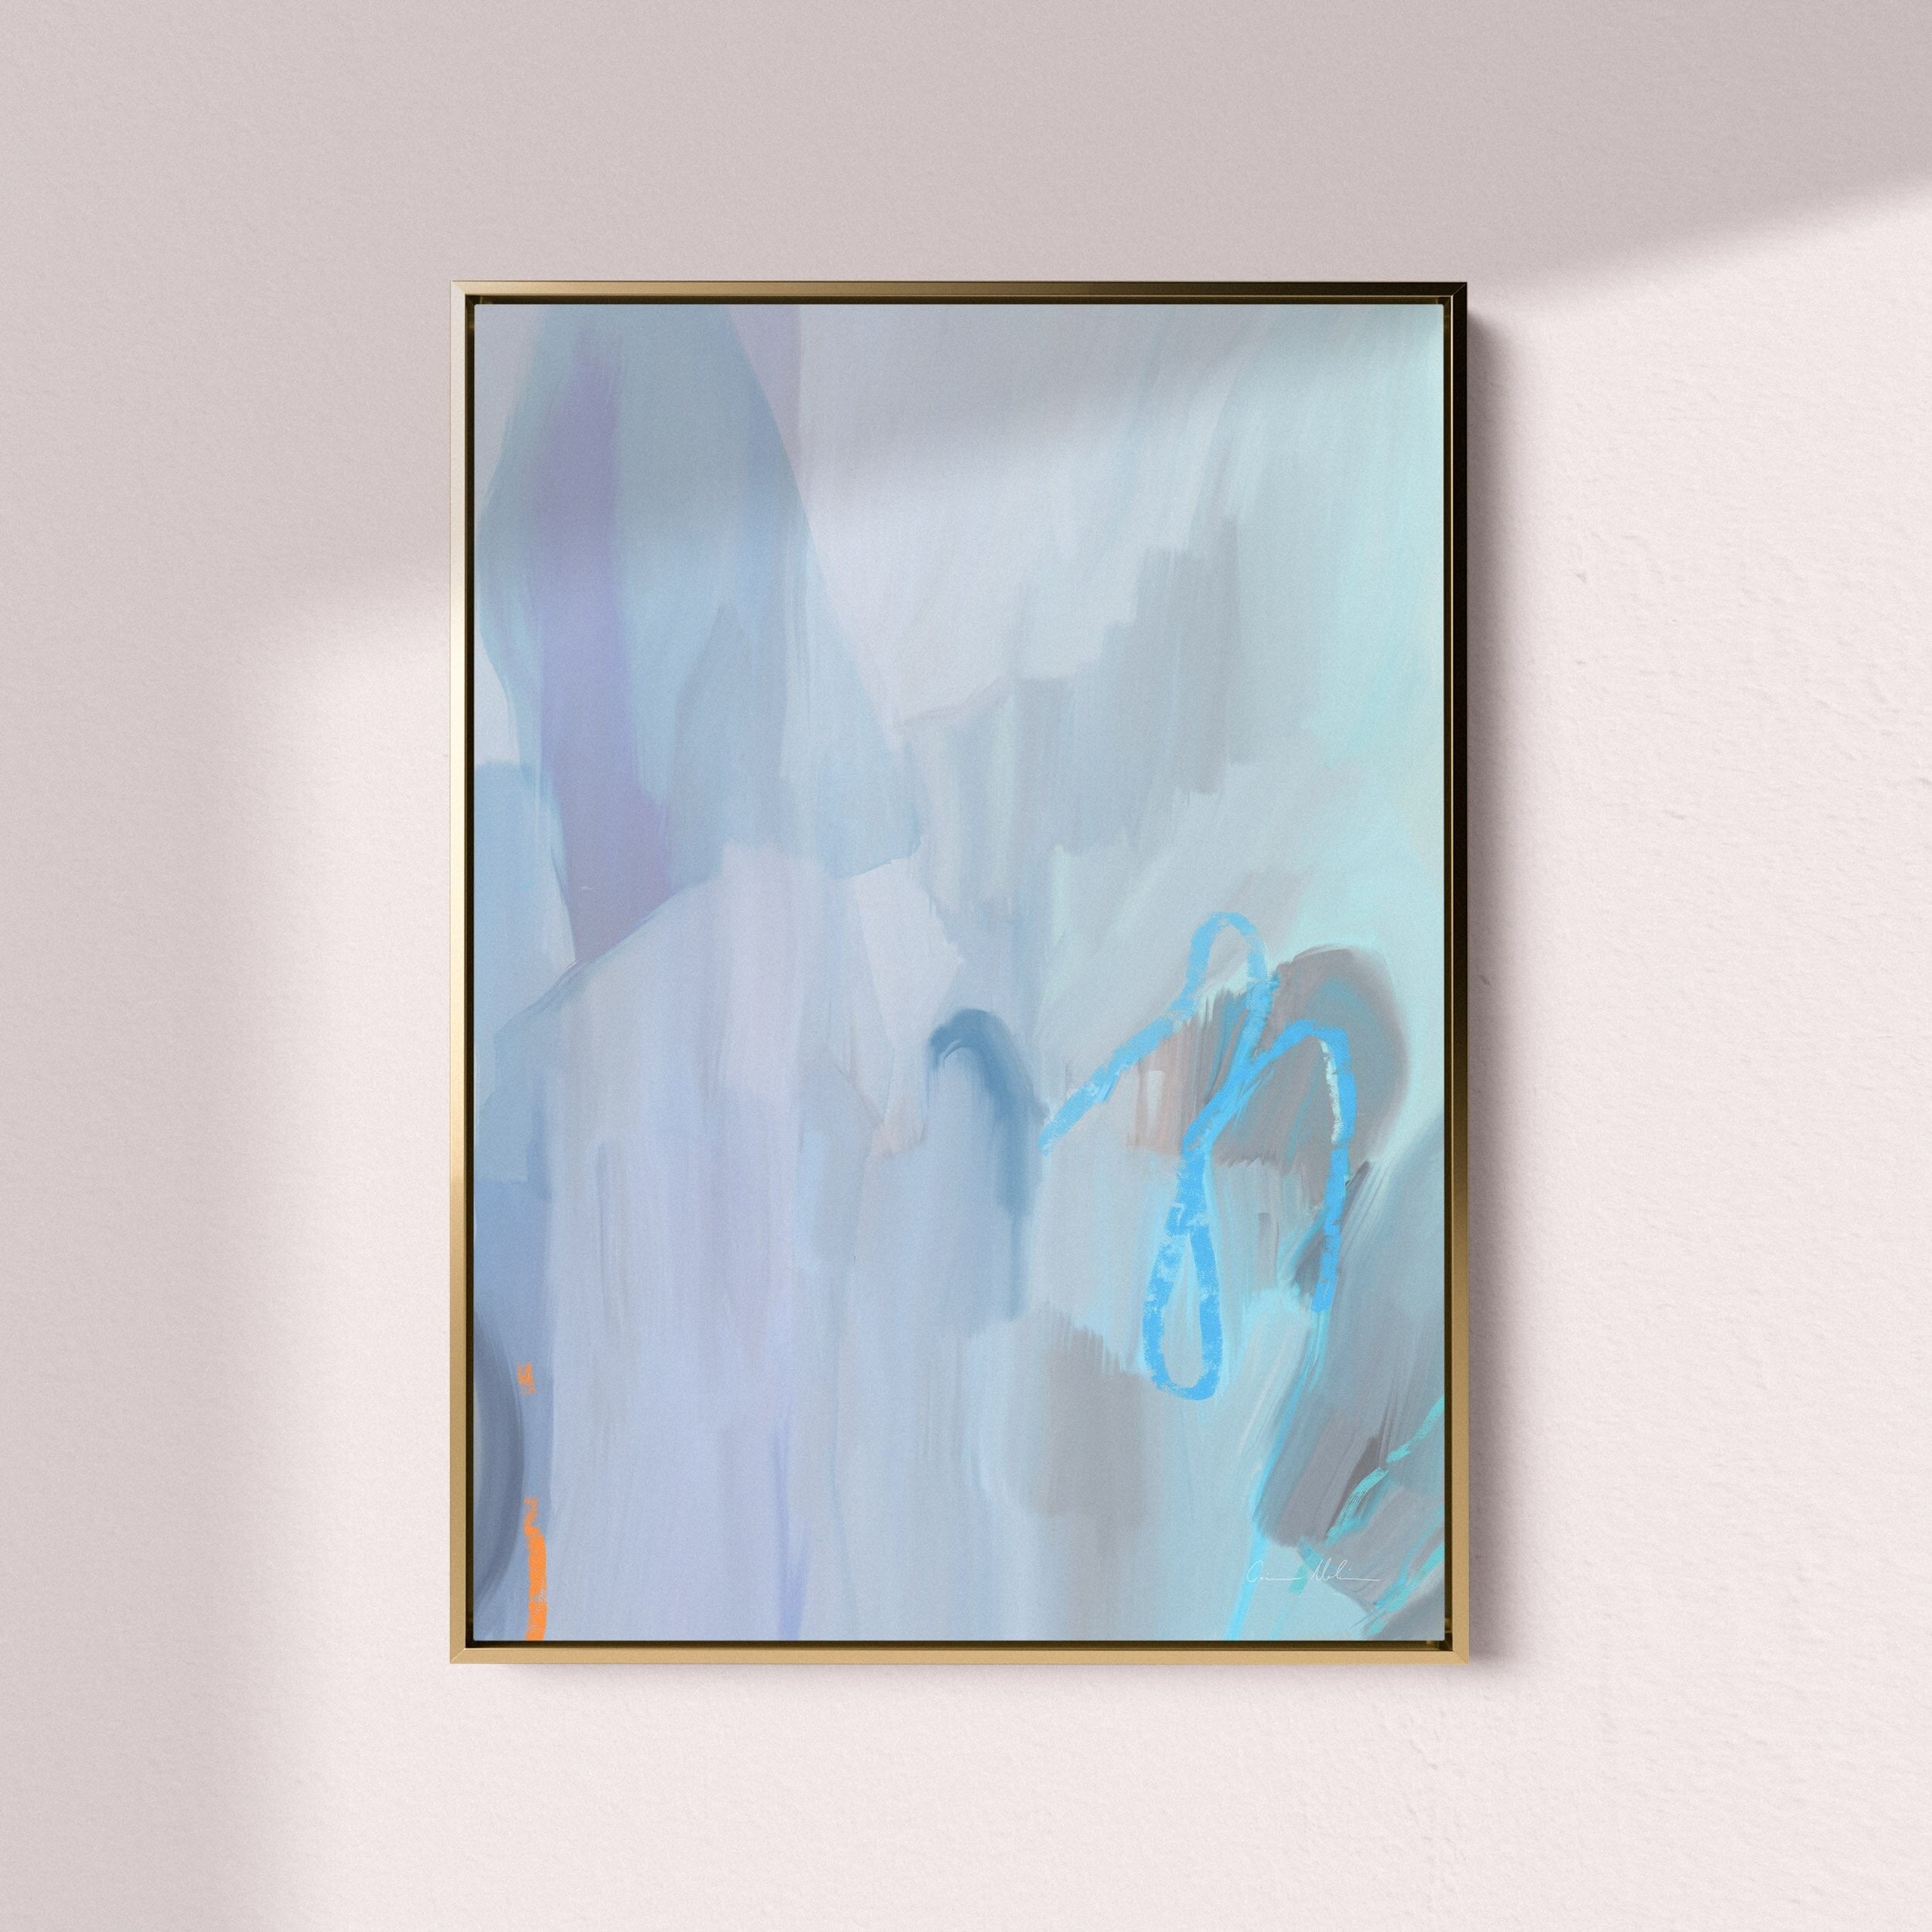 "Amalfi Coast" on Canvas - Portrait I Canvas Wall Art Corinne Melanie Art Professionally Framed - Gold 24x32in / 60x80cm 